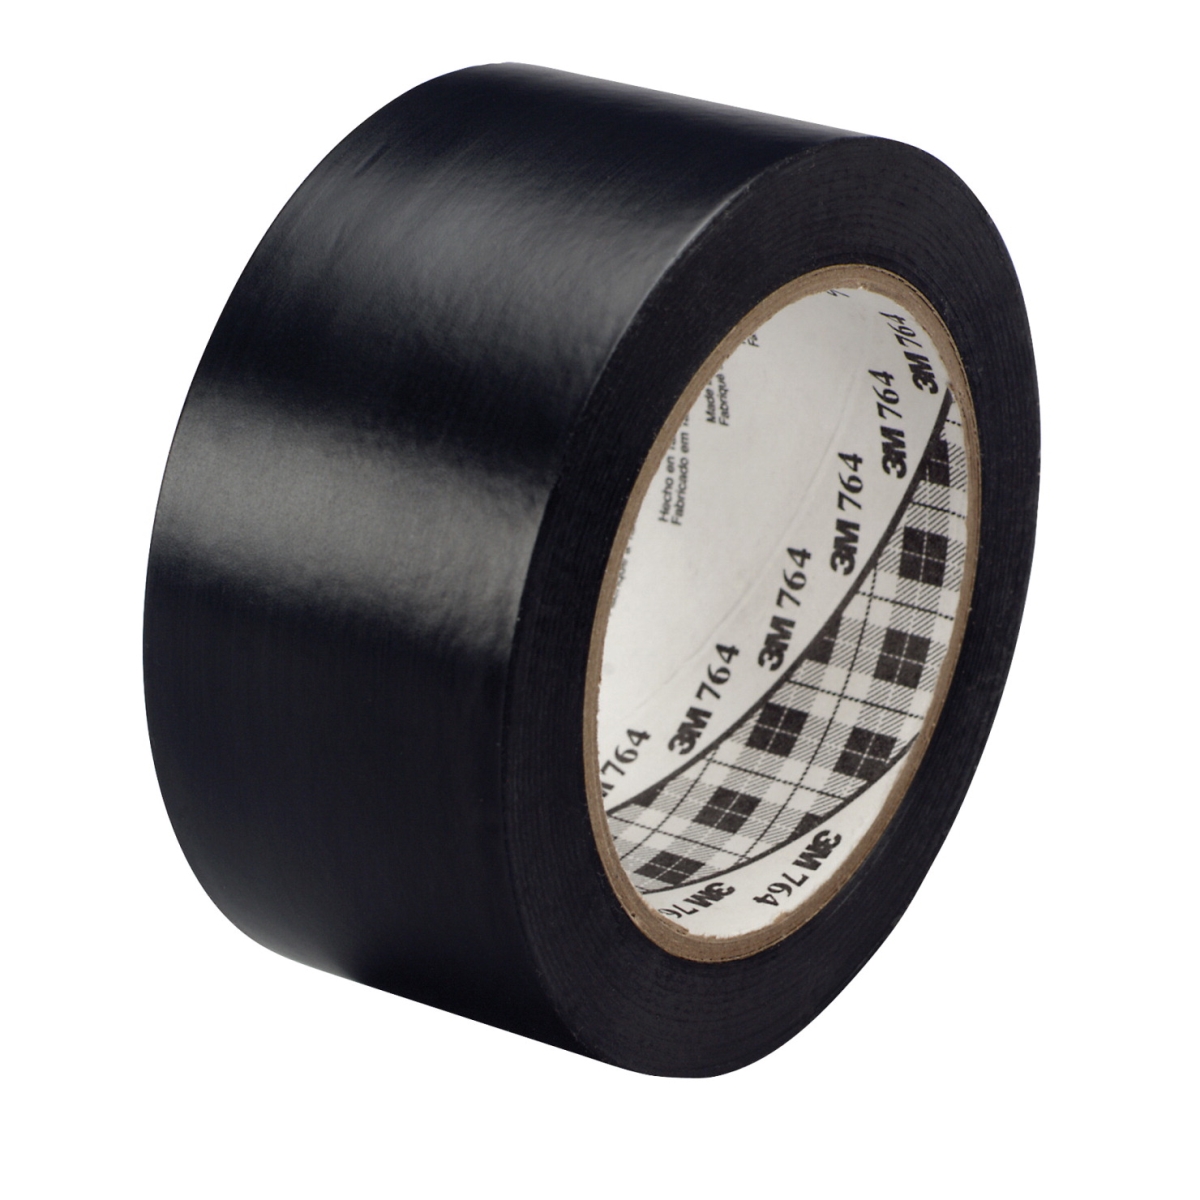 General Purpose Wear Resistant Floor Marking Tape Roll, 1 In. X 36 Yard, Vinyl - Black